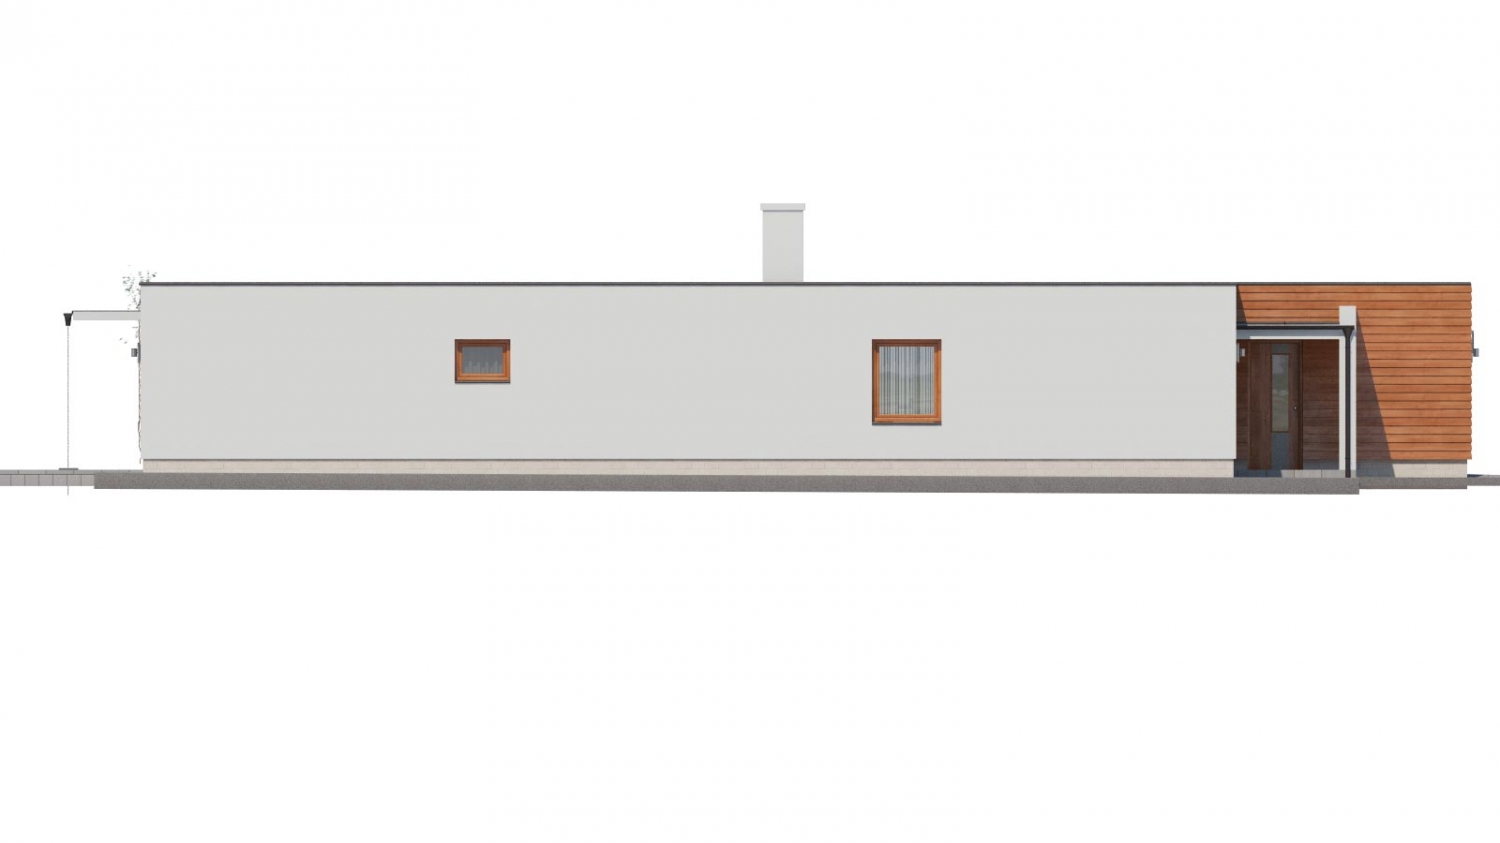 Pohľad 4. - Moderní atriový rodinný dům ve tvaru U s garáží, plochou střechou. Vhodný i na úzký pozemek.